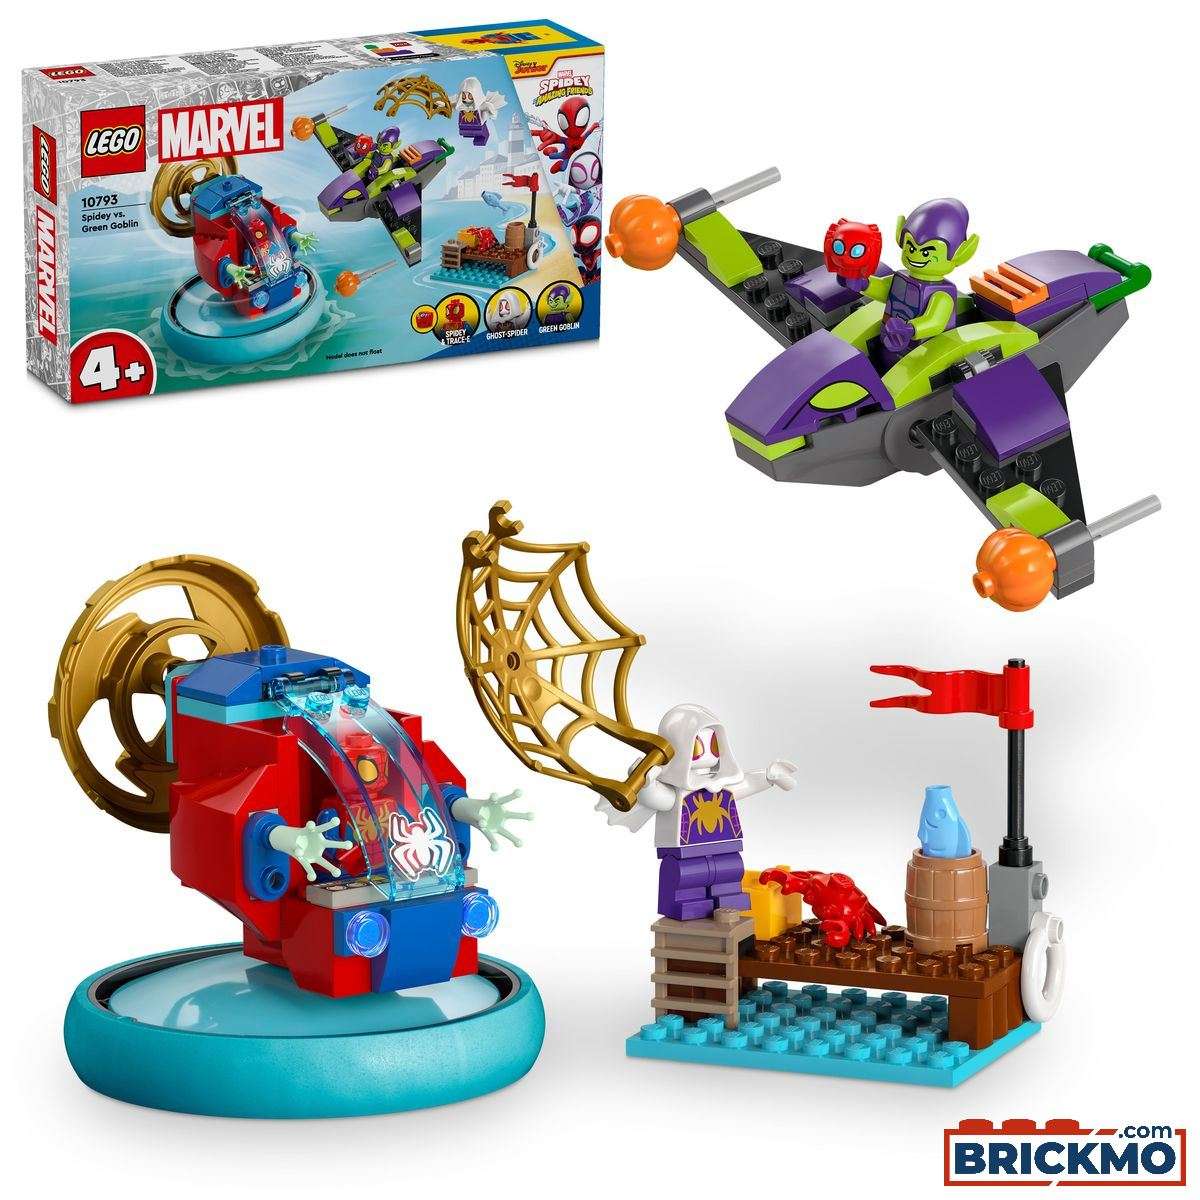 LEGO Marvel 10793 Spider-man vs. Goblin 10793